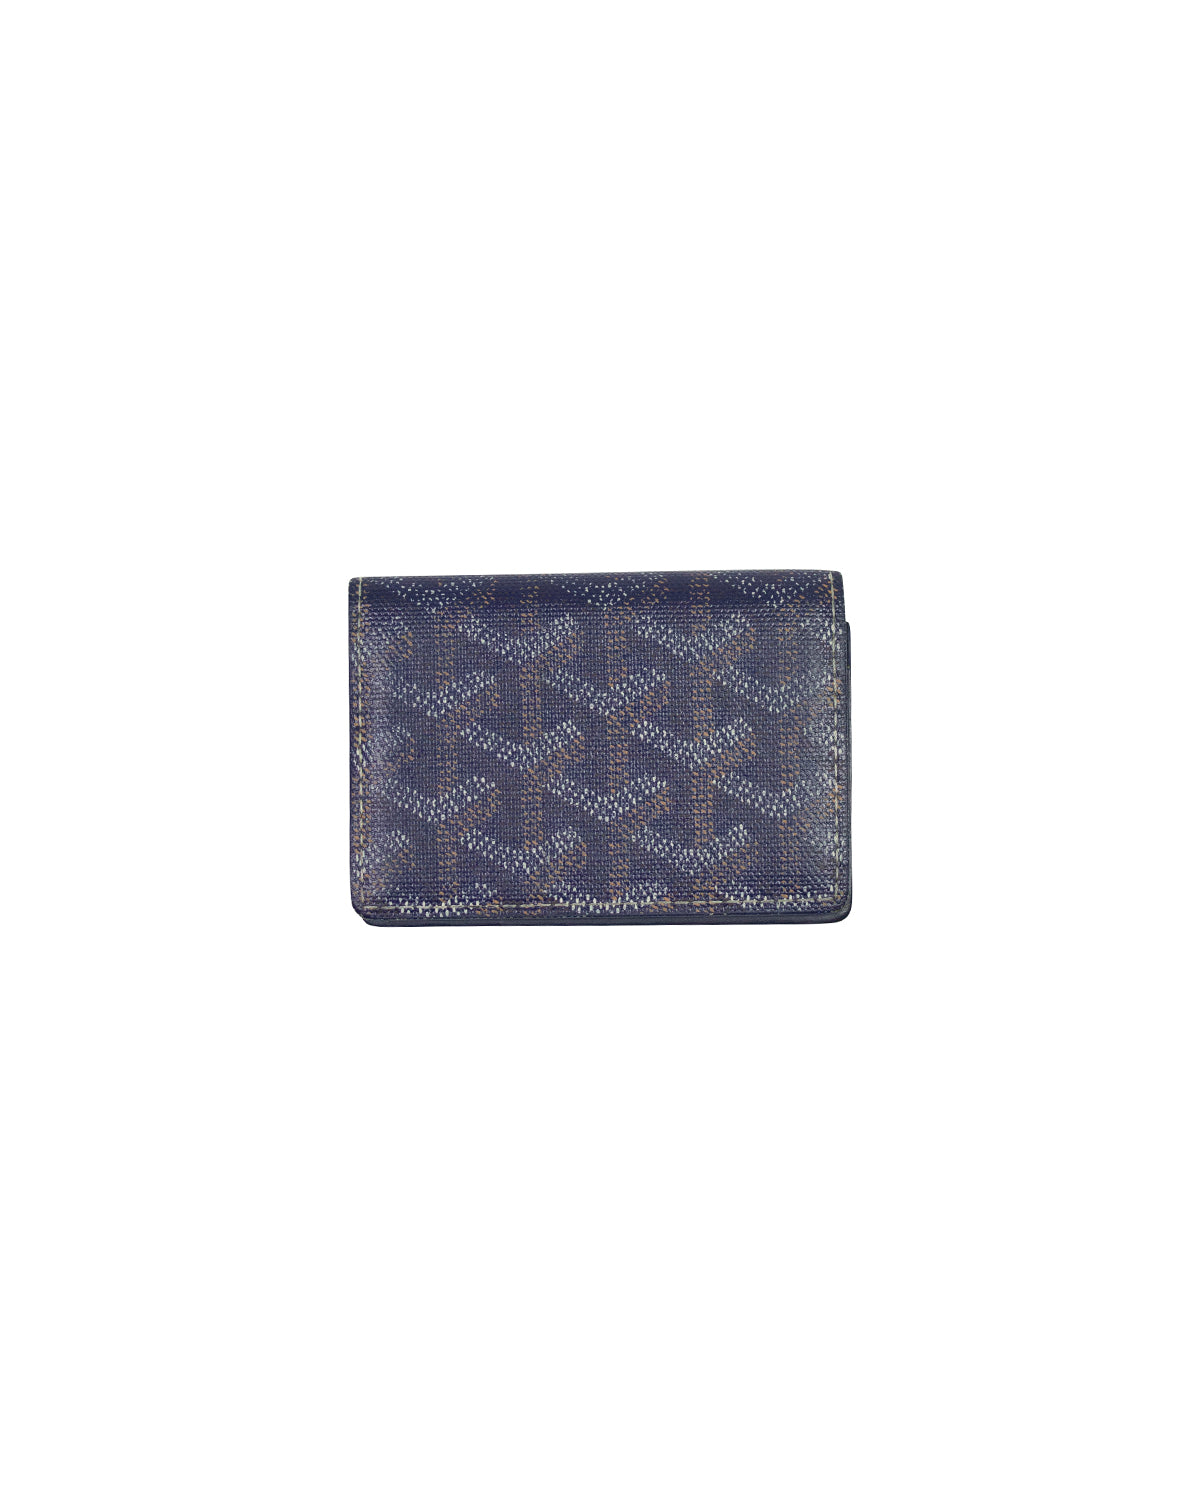 Goyard, Accessories, Goyard Cardholder Dark Navy Blue Wallet Card Holder